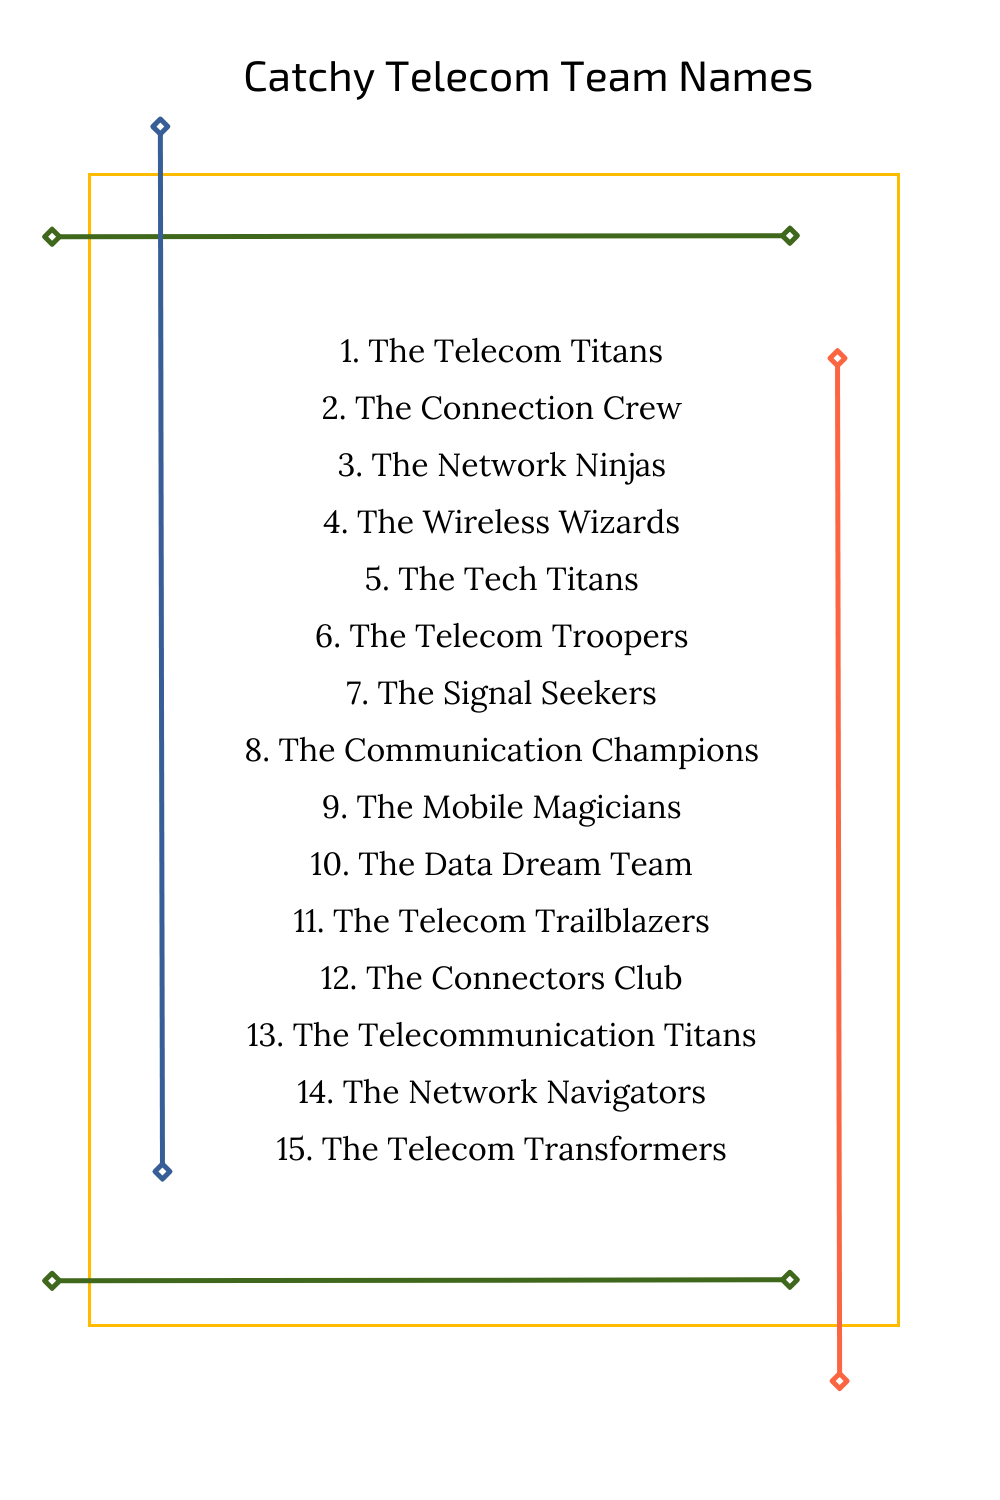 Catchy Telecom Team Names